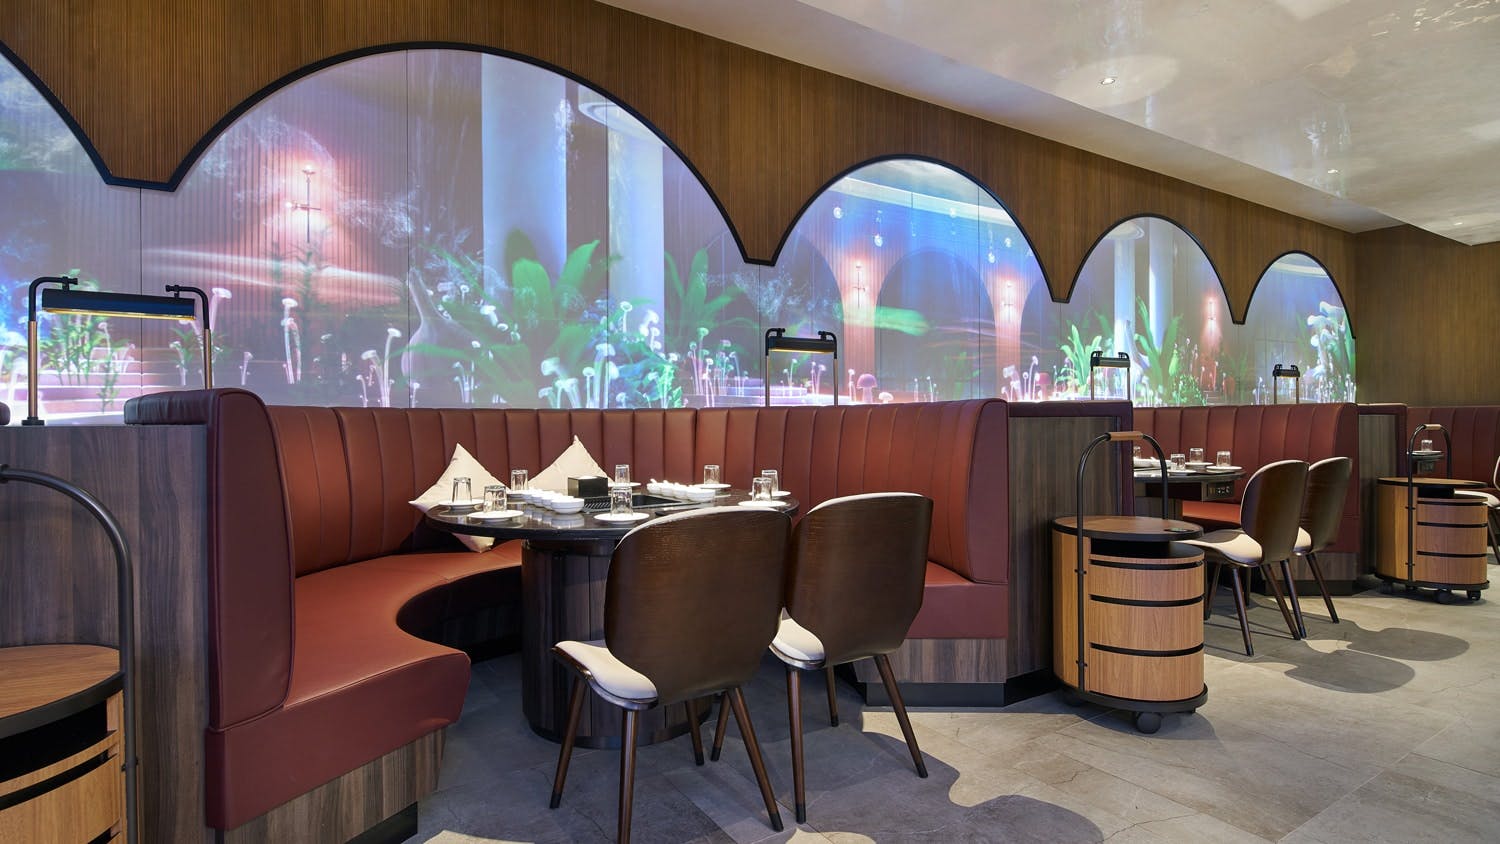 Numéro d'image 55 de la section actuelle de Michelin-starred restaurant Etoile in Stockholm relies on Dekton design de Cosentino France